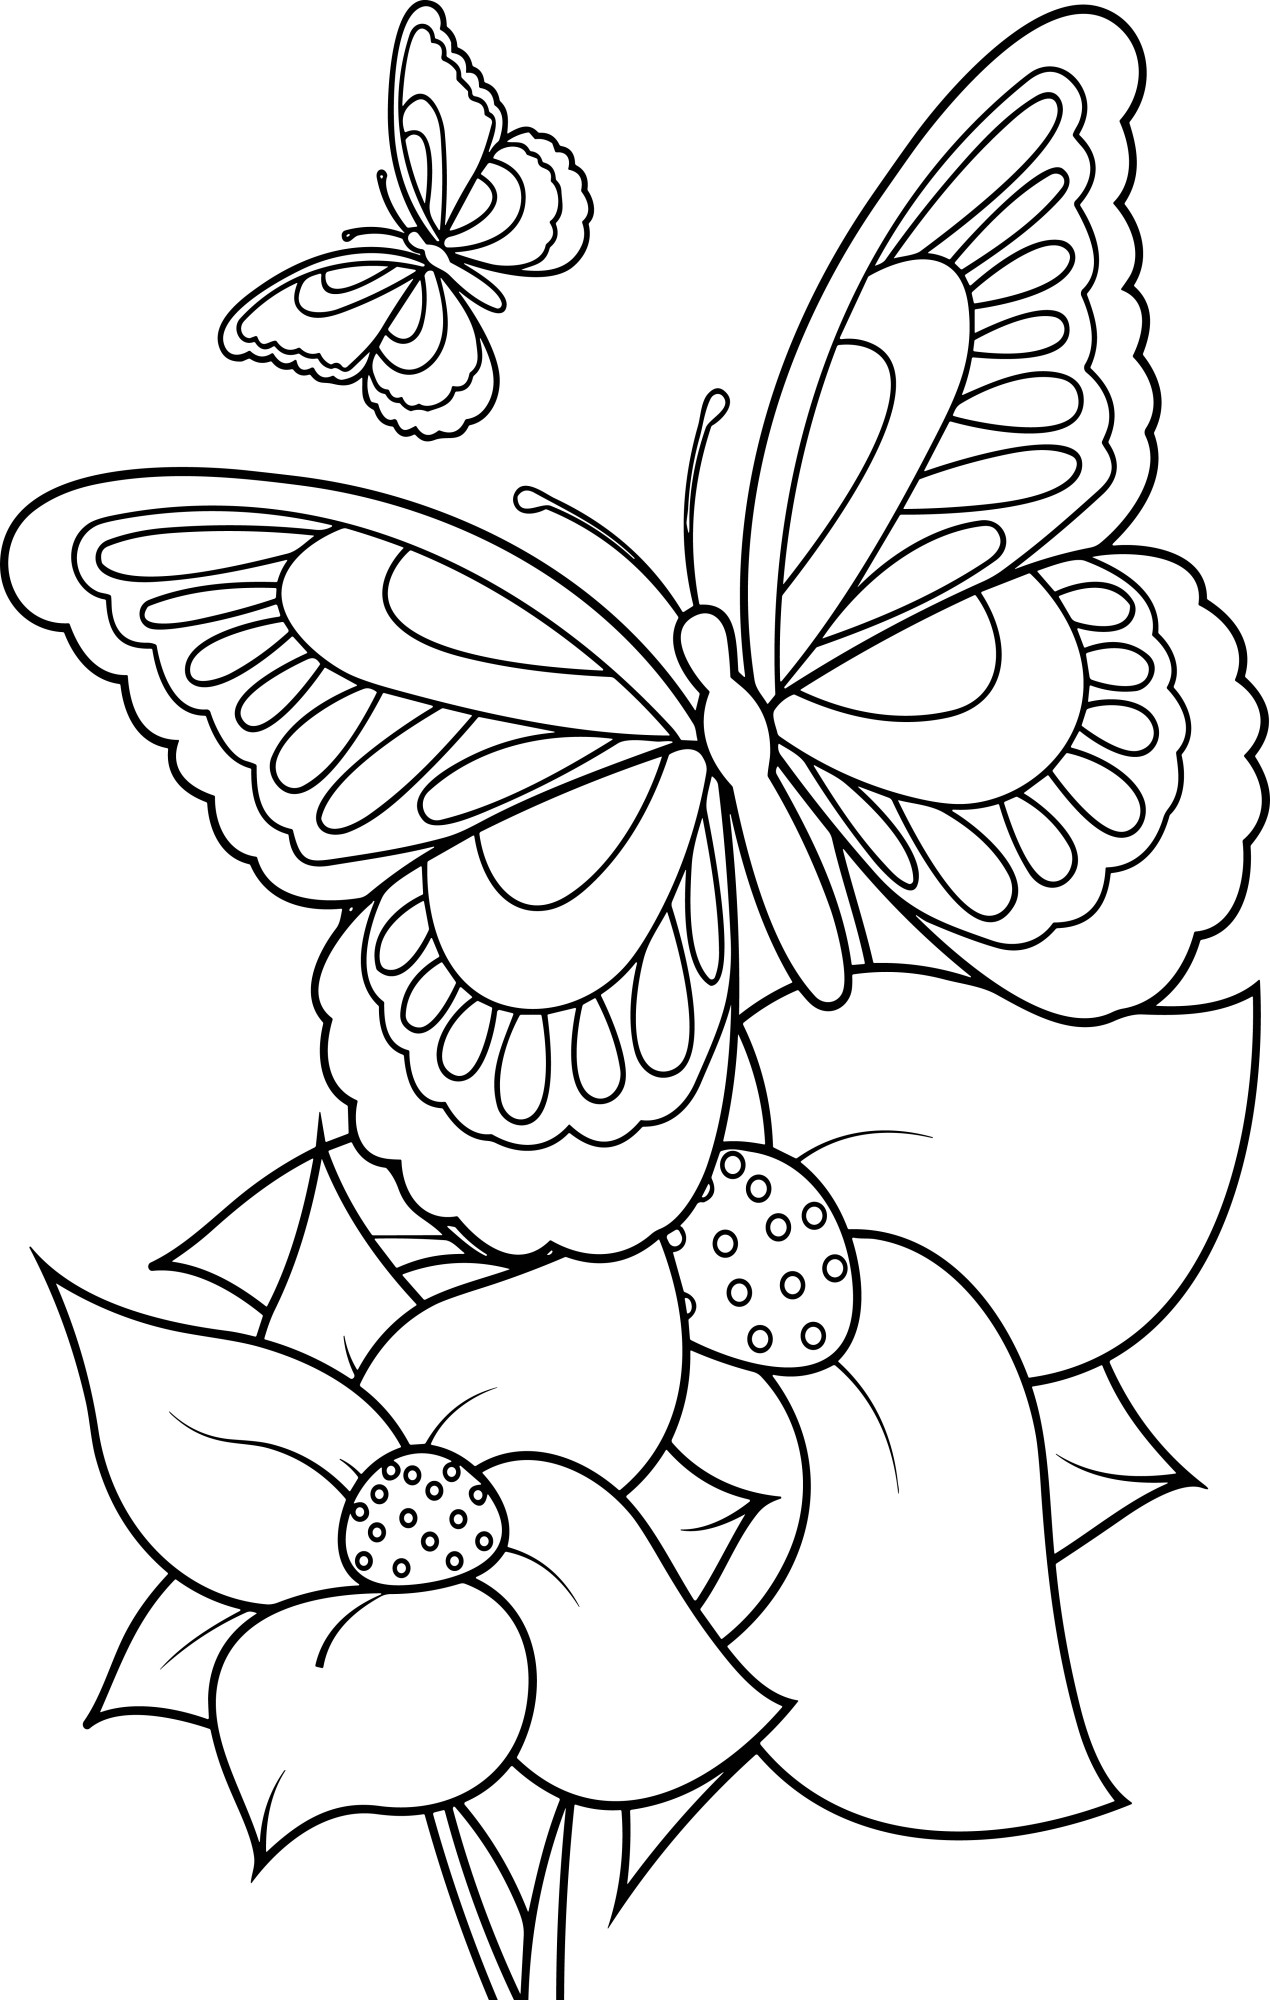 Раскраска для детей: две бабочки летают над цветами